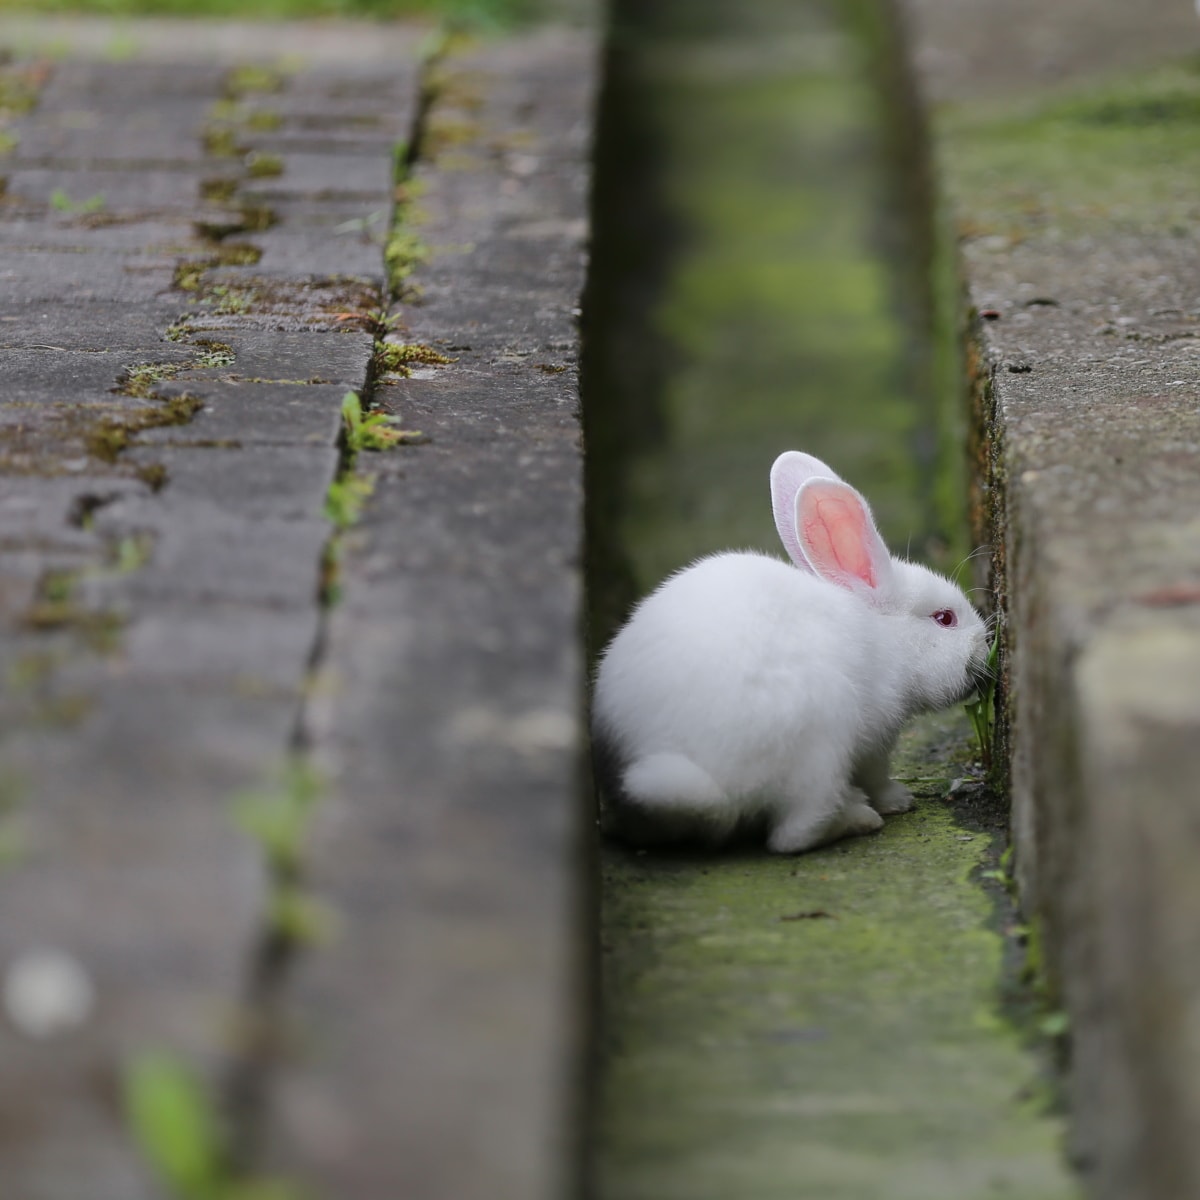 gonić króliczka — o nieskuteczności złych przepisów